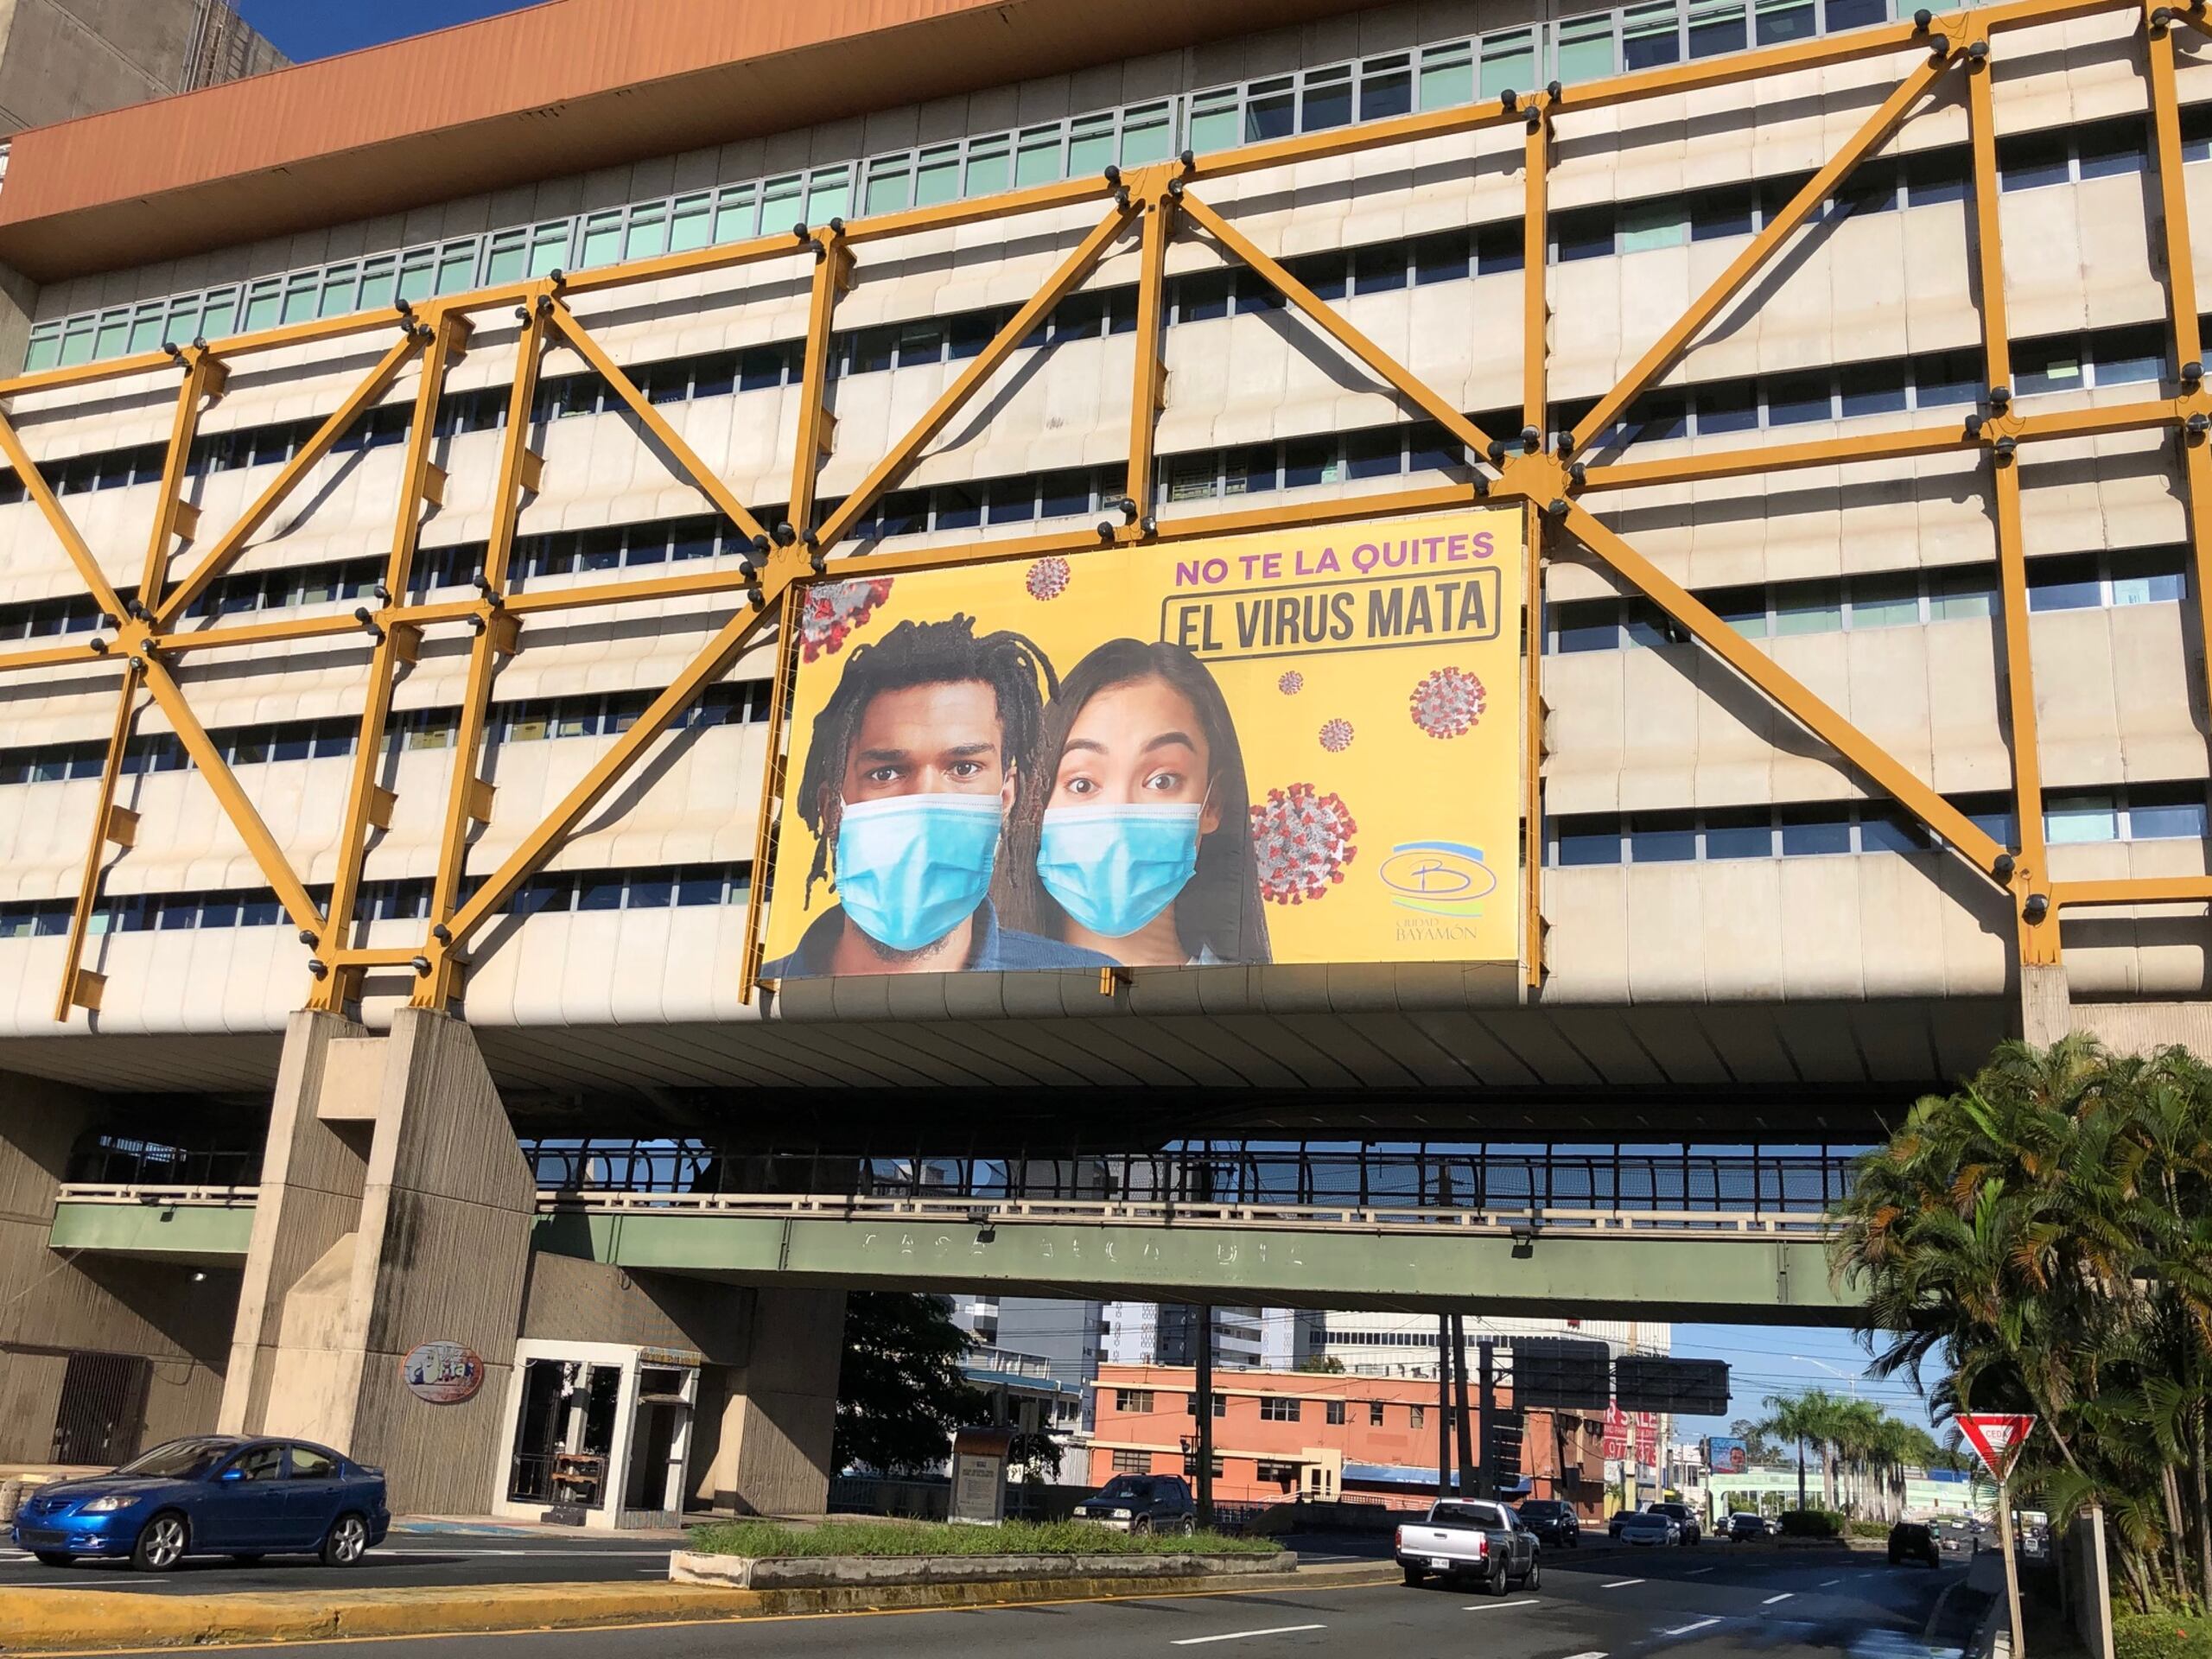 Se han desplegado pancartas en diversos puntos de la ciudad, que presentan a dos jóvenes utilizando mascarillas quirúrgicas, llevando un mensaje puntual de las consecuencias de no llevarla.